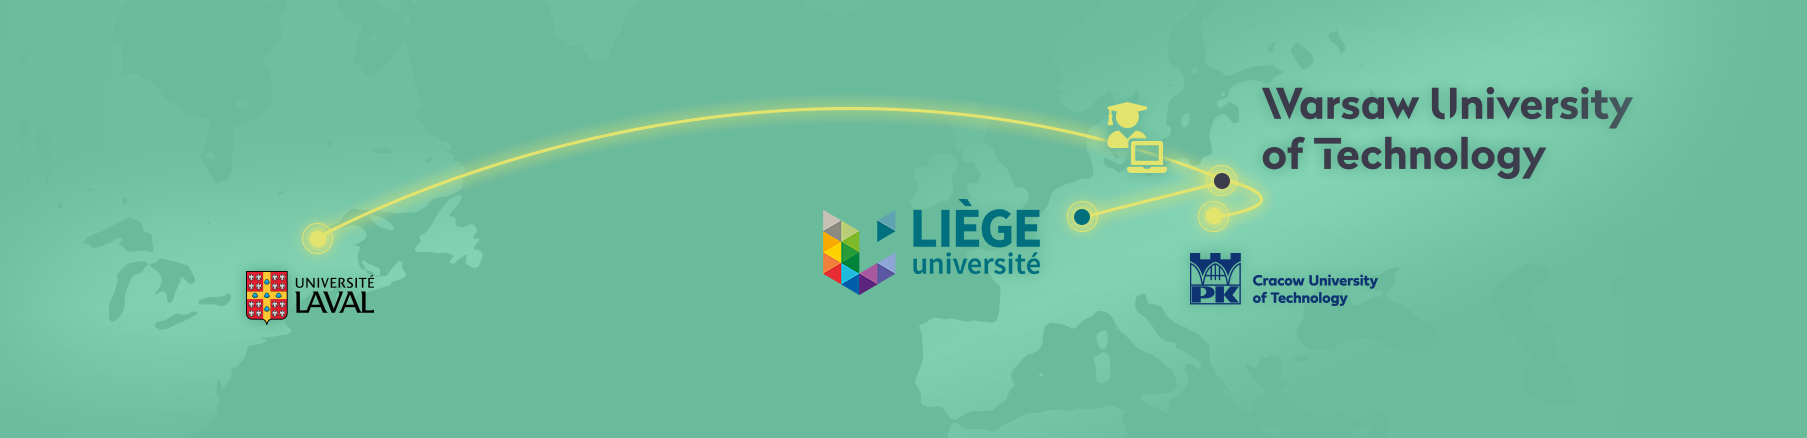 Prestiżowy doktorat międzynarodowy we współpracy z L’université De Liège